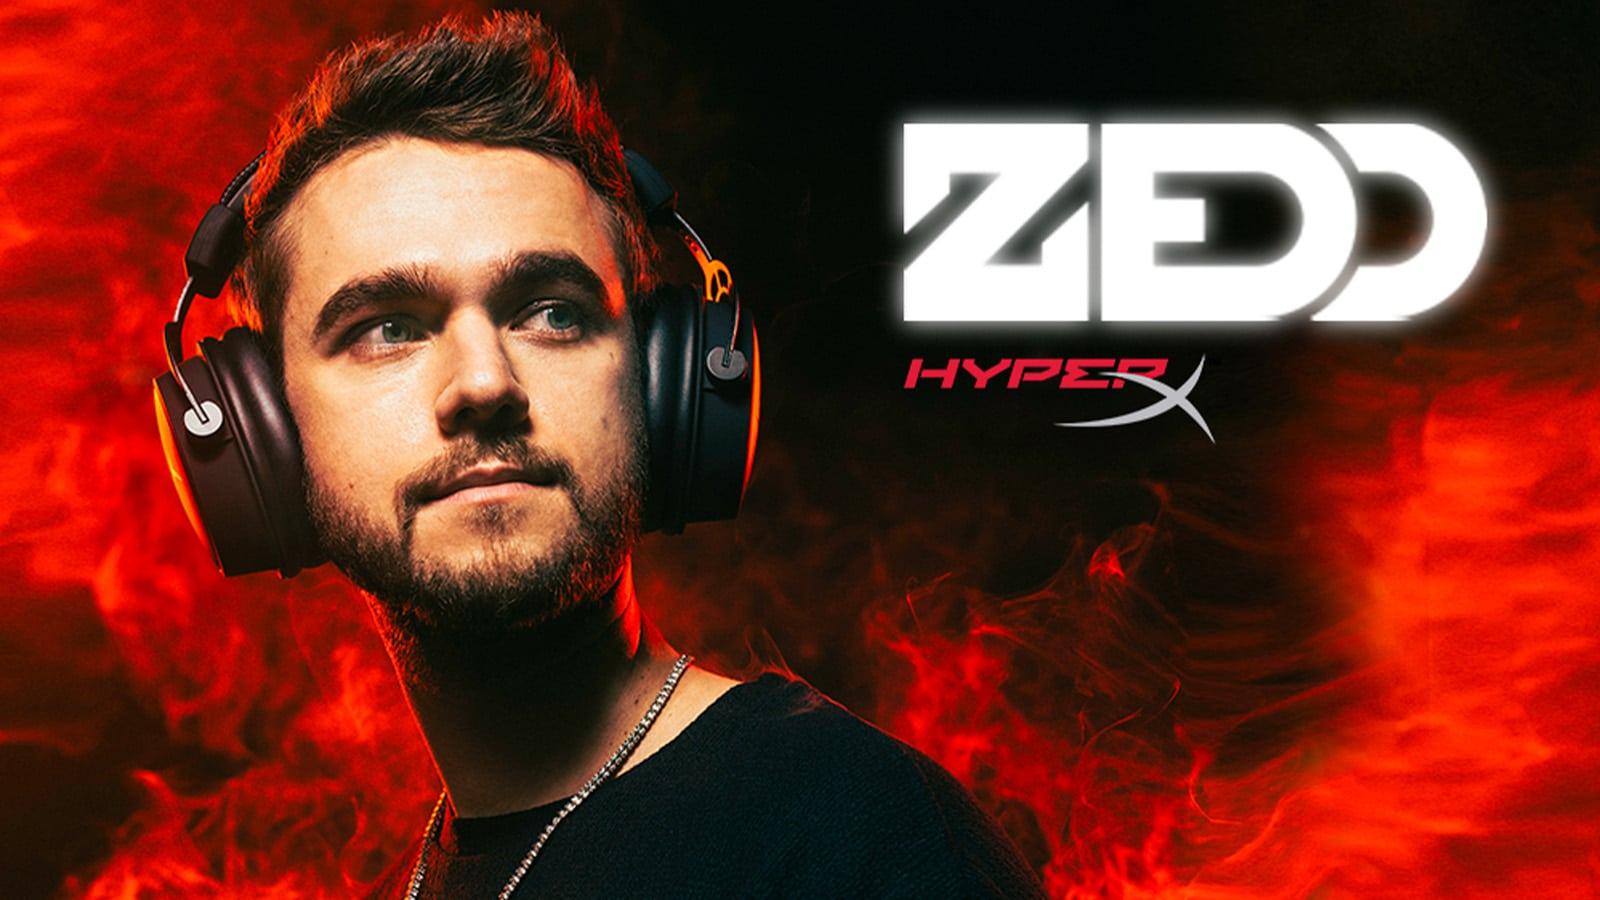 Zedd HyperX Ambassador Red